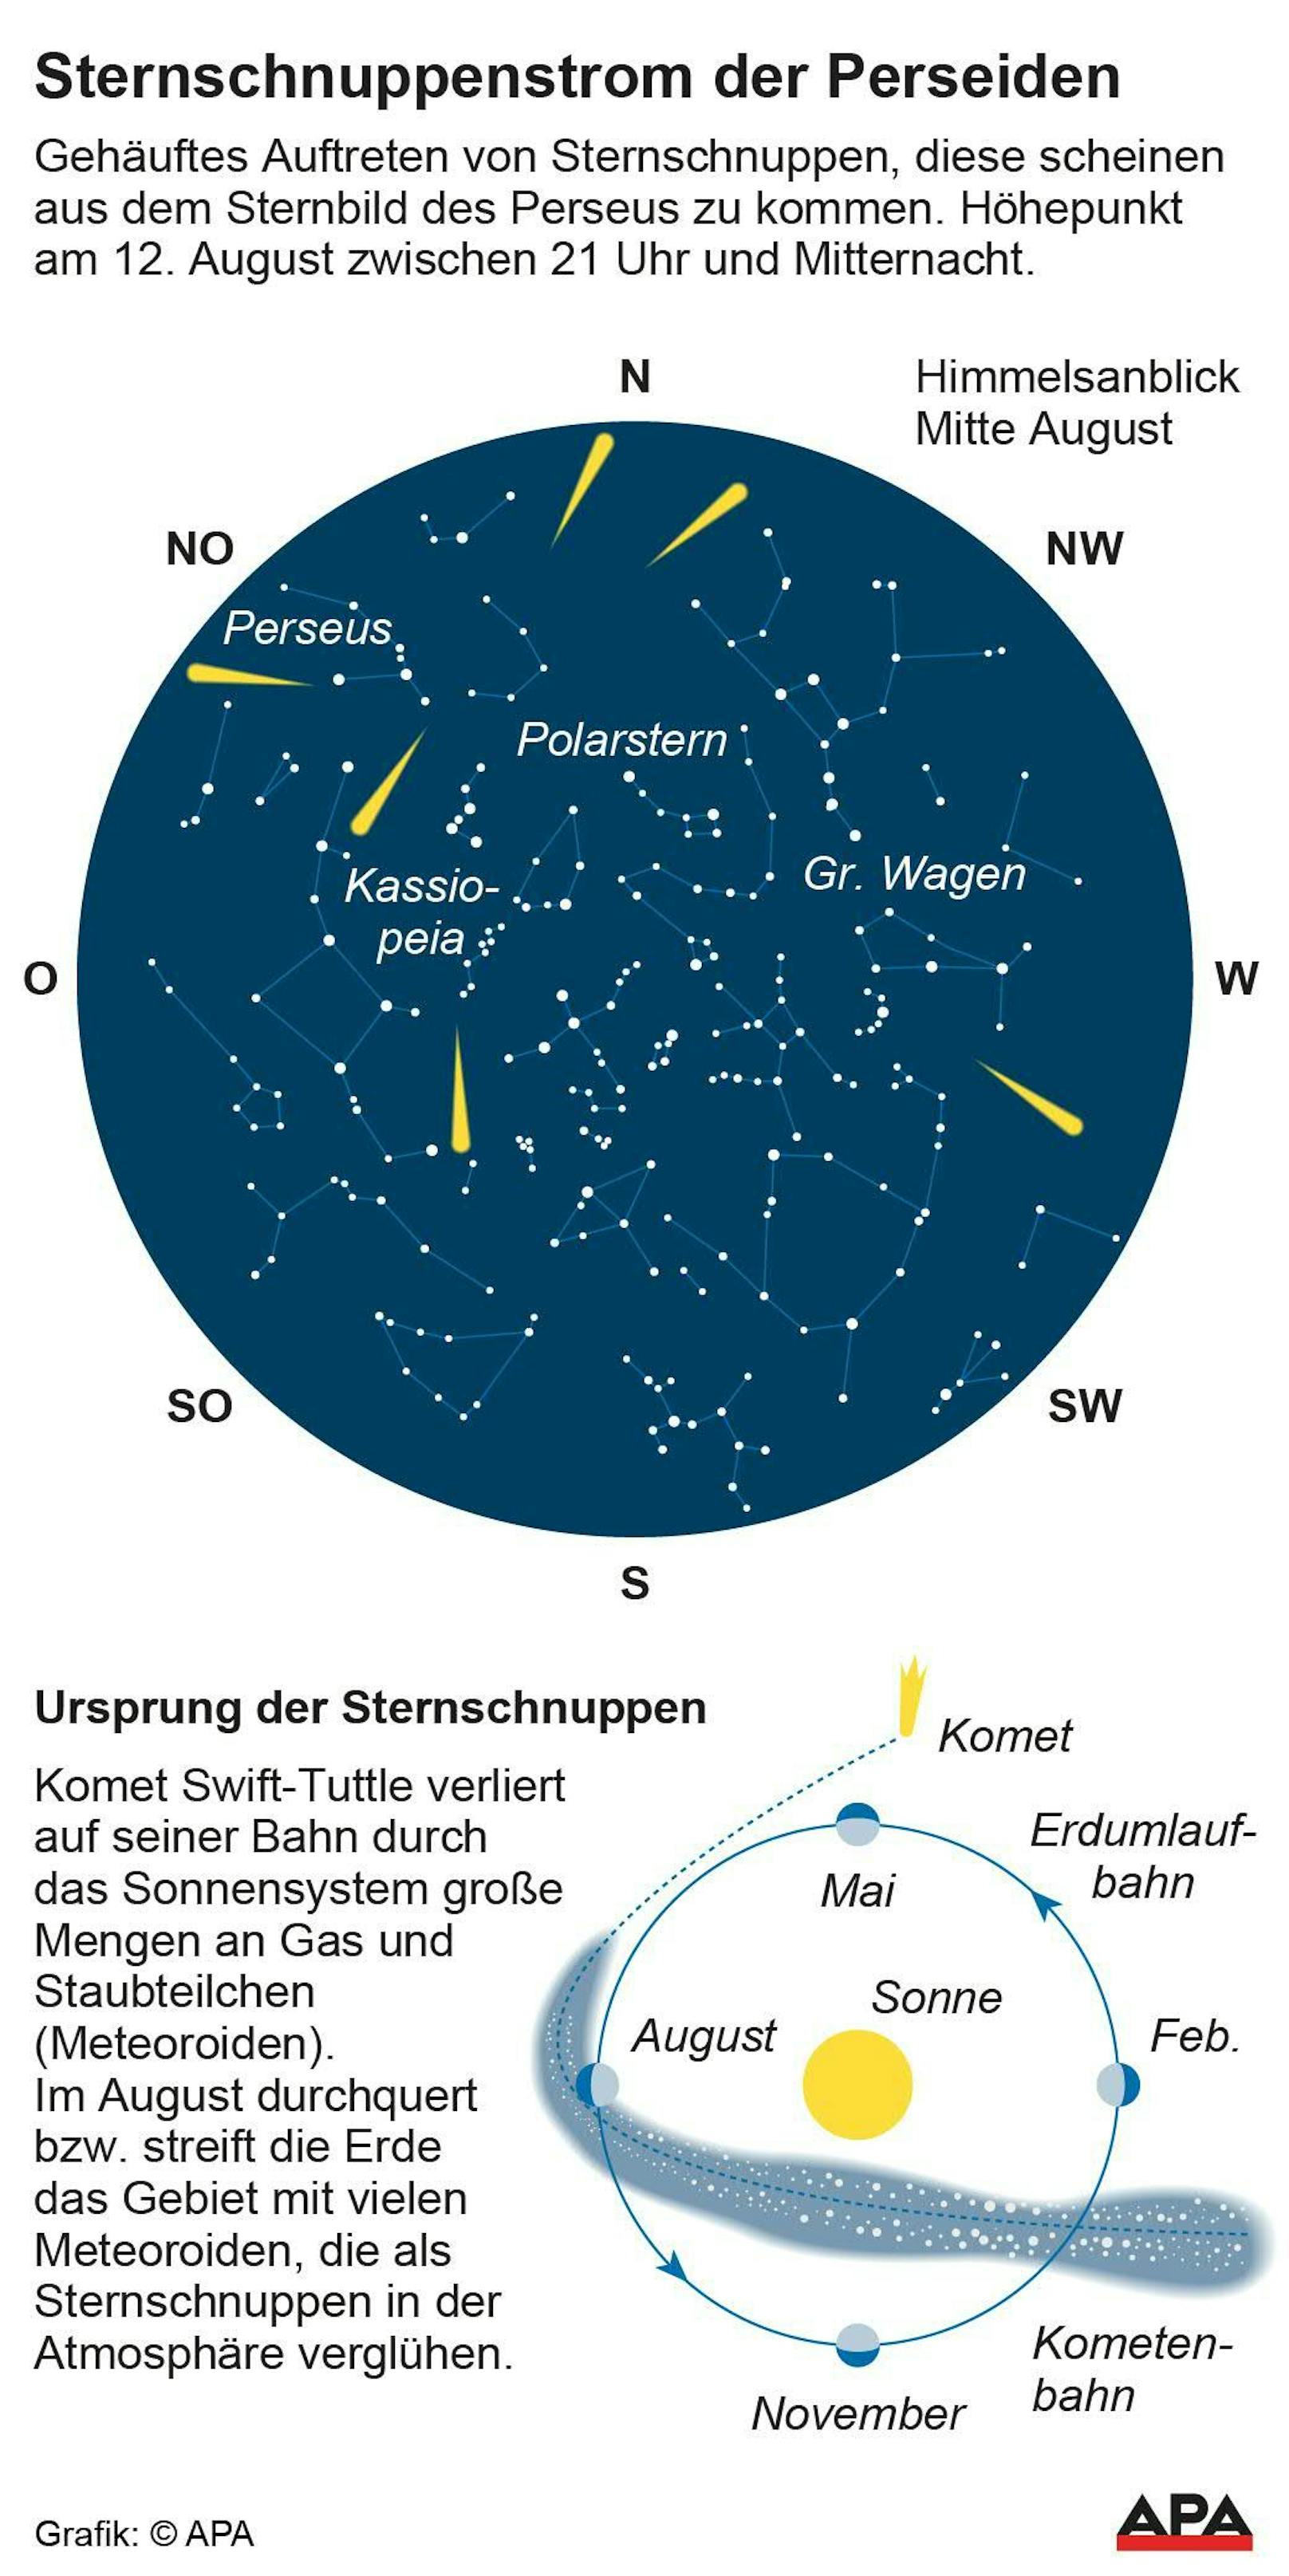 Die Sternenkarte mit Erklärung zur Entstehung der Perseiden